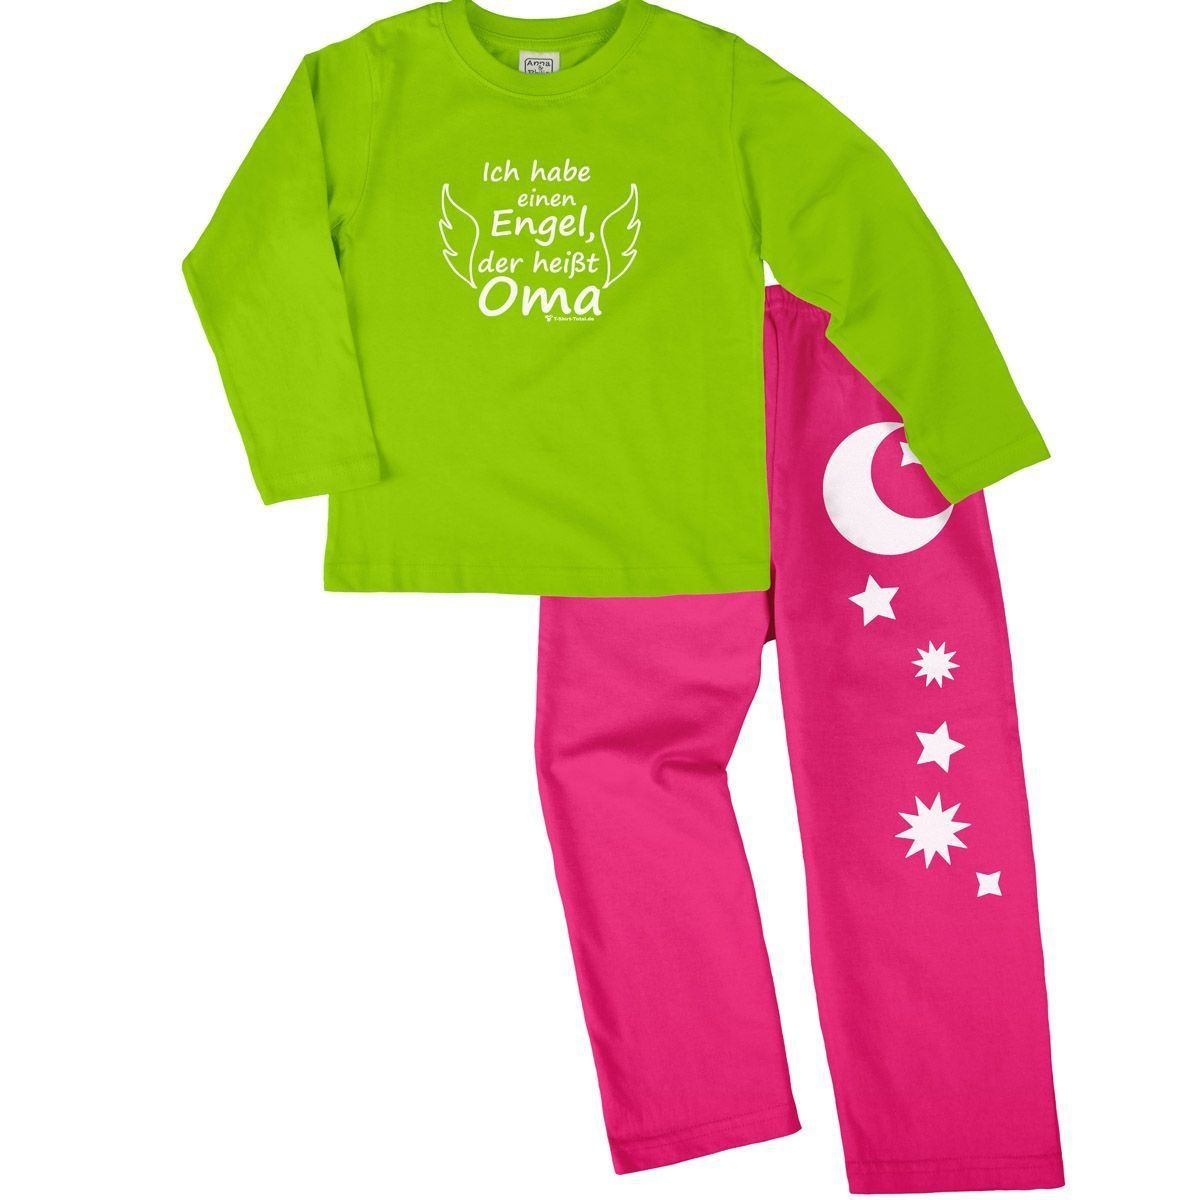 Engel Oma Pyjama Set hellgrün / pink 122 / 128